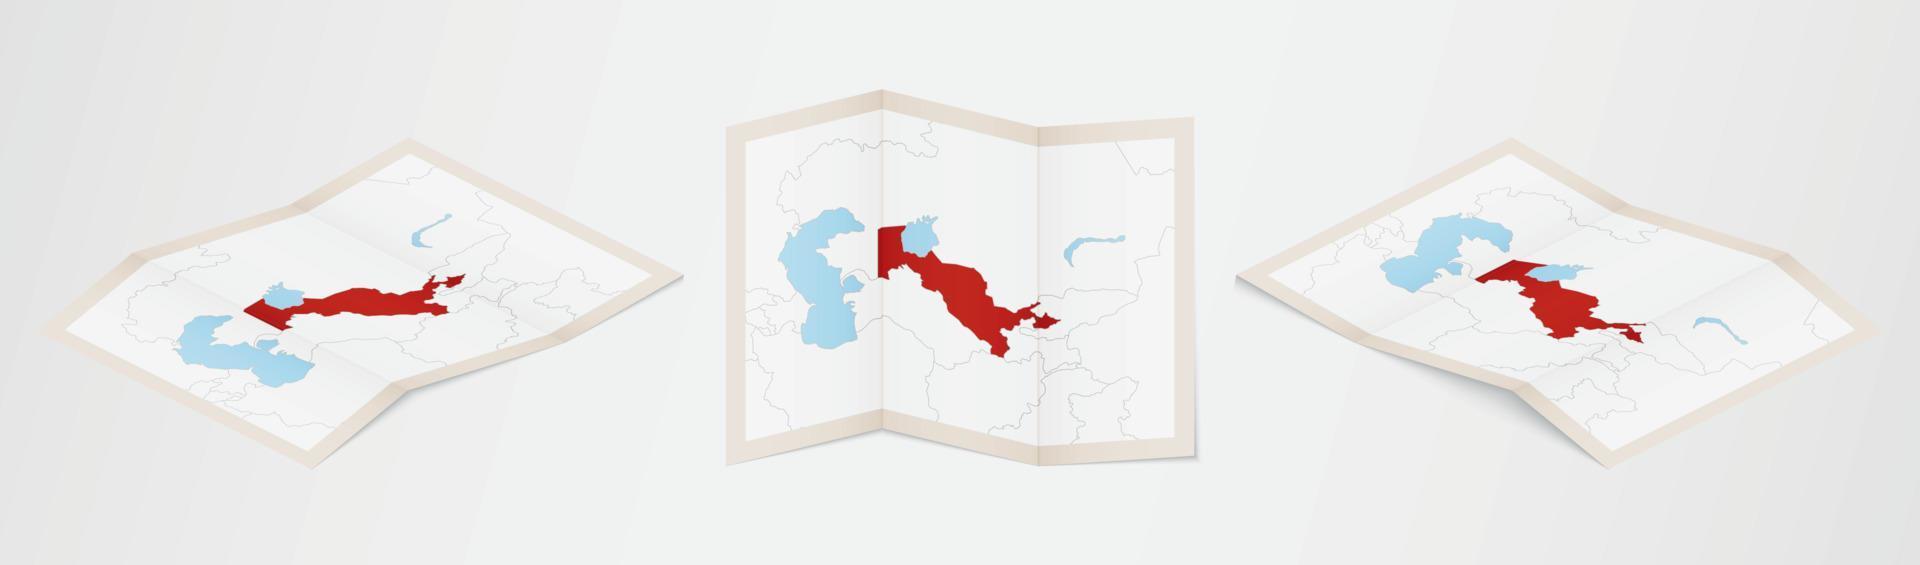 mapa dobrado do uzbequistão em três versões diferentes. vetor